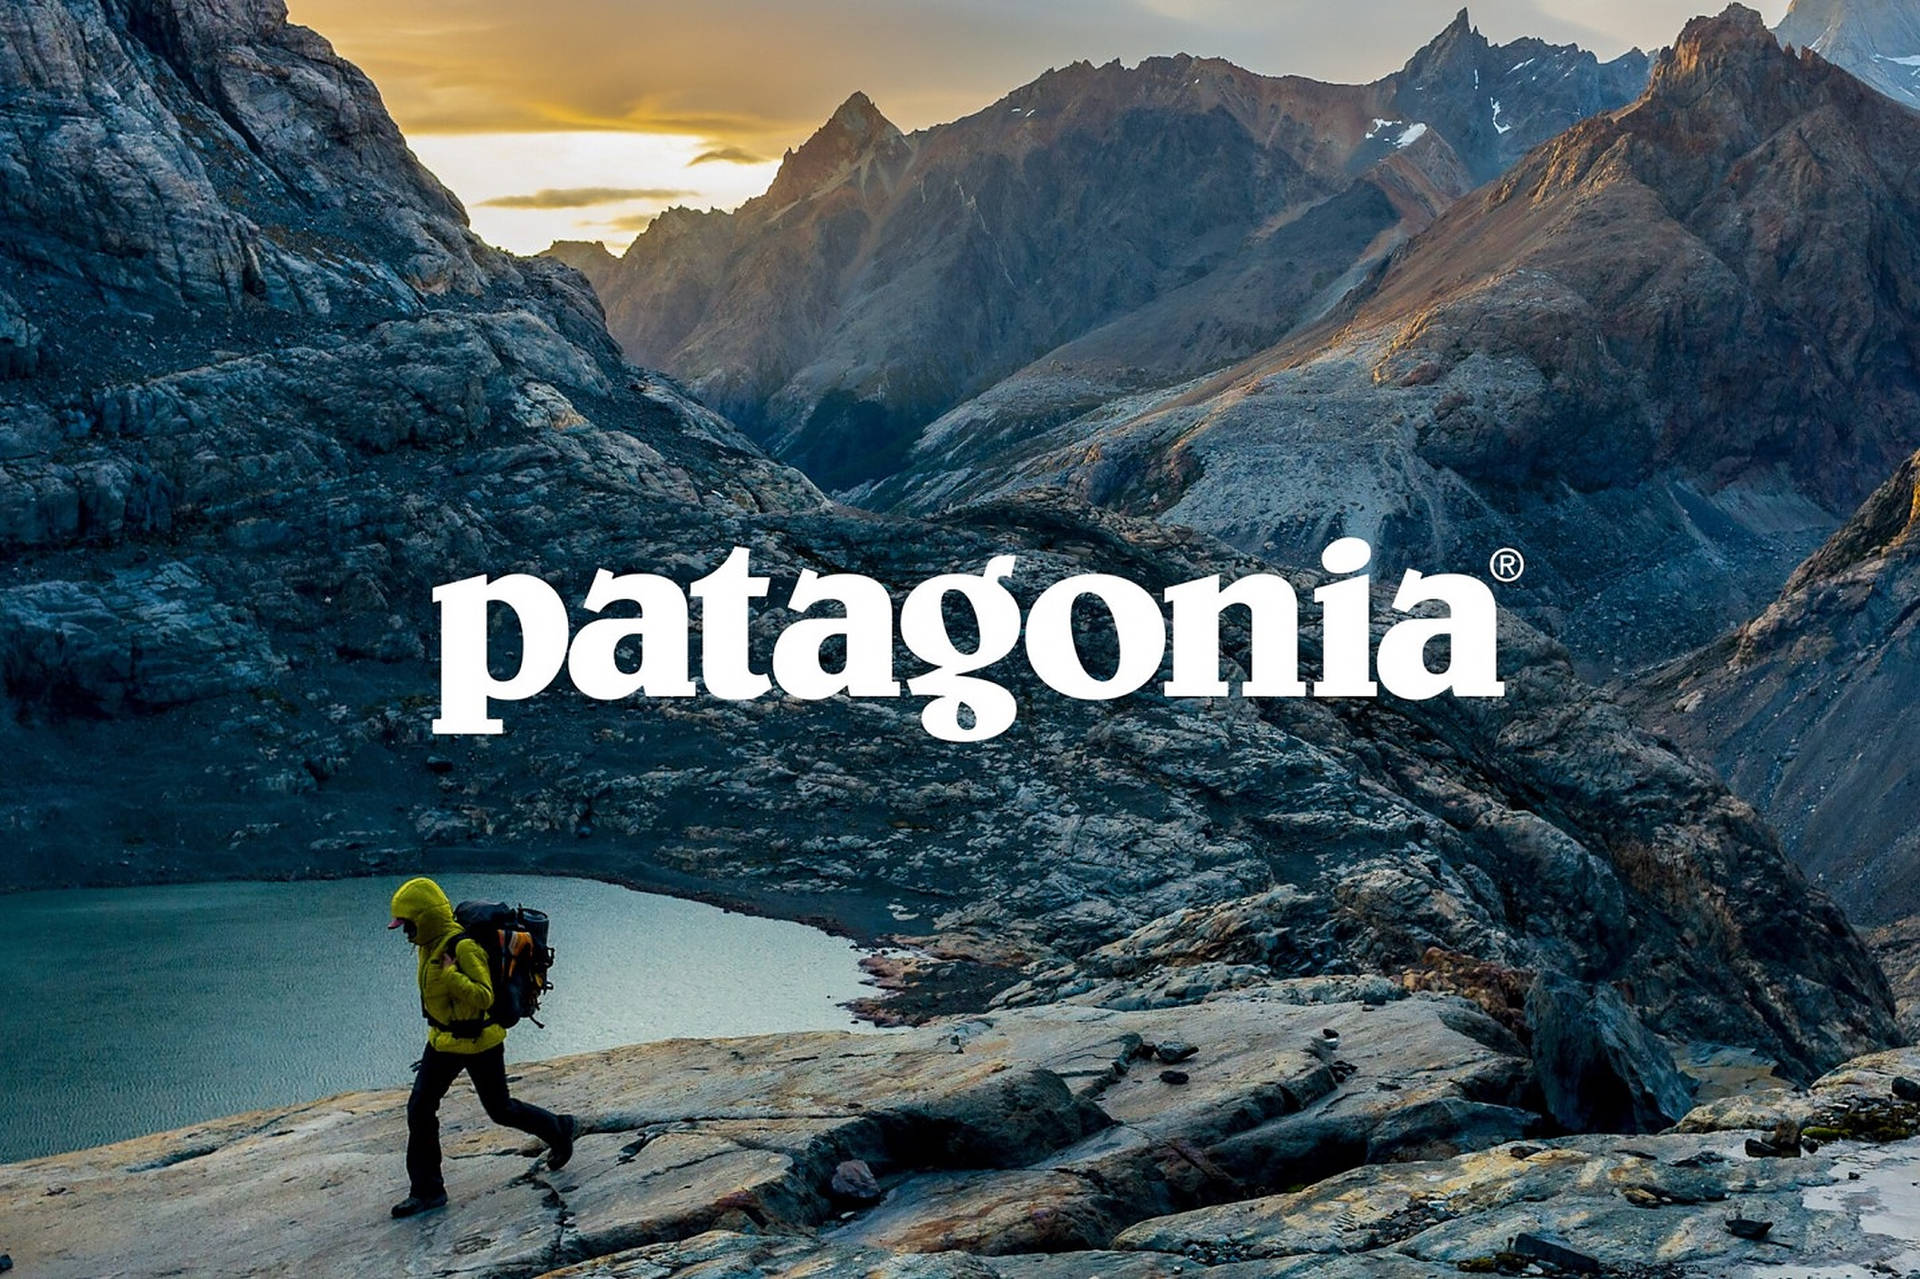 Patagonia Mountain Logo With Person